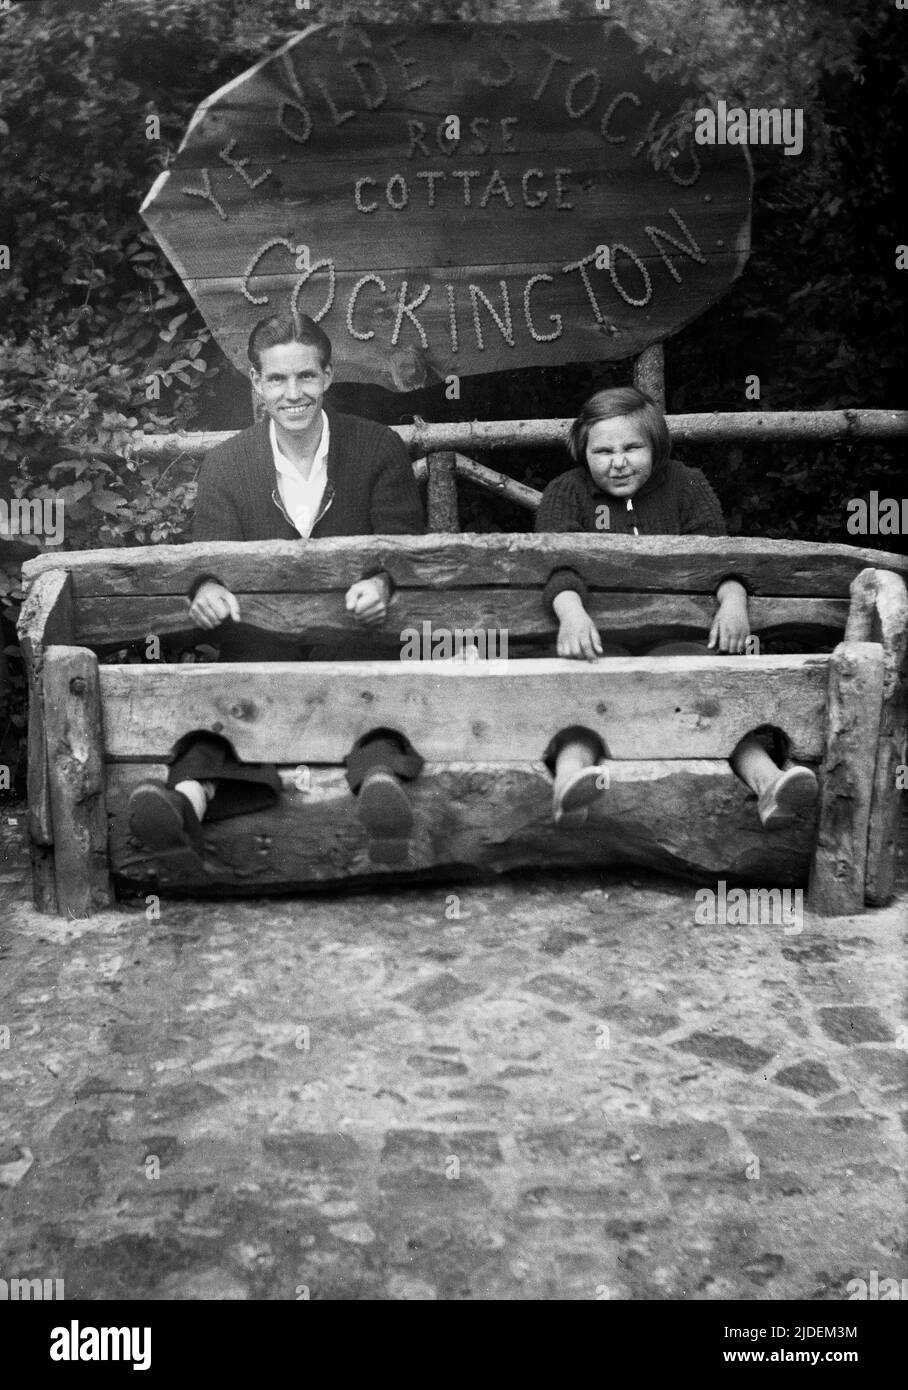 1935, historique, un père et une fille assis pour leur photo dans 'Ye Olde stocks' à Rose Cottage à Cockington, Torquay, Devon, Angleterre, Royaume-Uni. Les stocks étaient des dispositifs en bois utilisés comme une forme de « punition » et de « honte » pour les délinquants locaux de la petite criminalité et ont retenu les pieds et les mains des délinquants. Vus sur les verts de village en Grande-Bretagne, ils étaient en usage jusqu'à la fin du 18th siècle. Banque D'Images